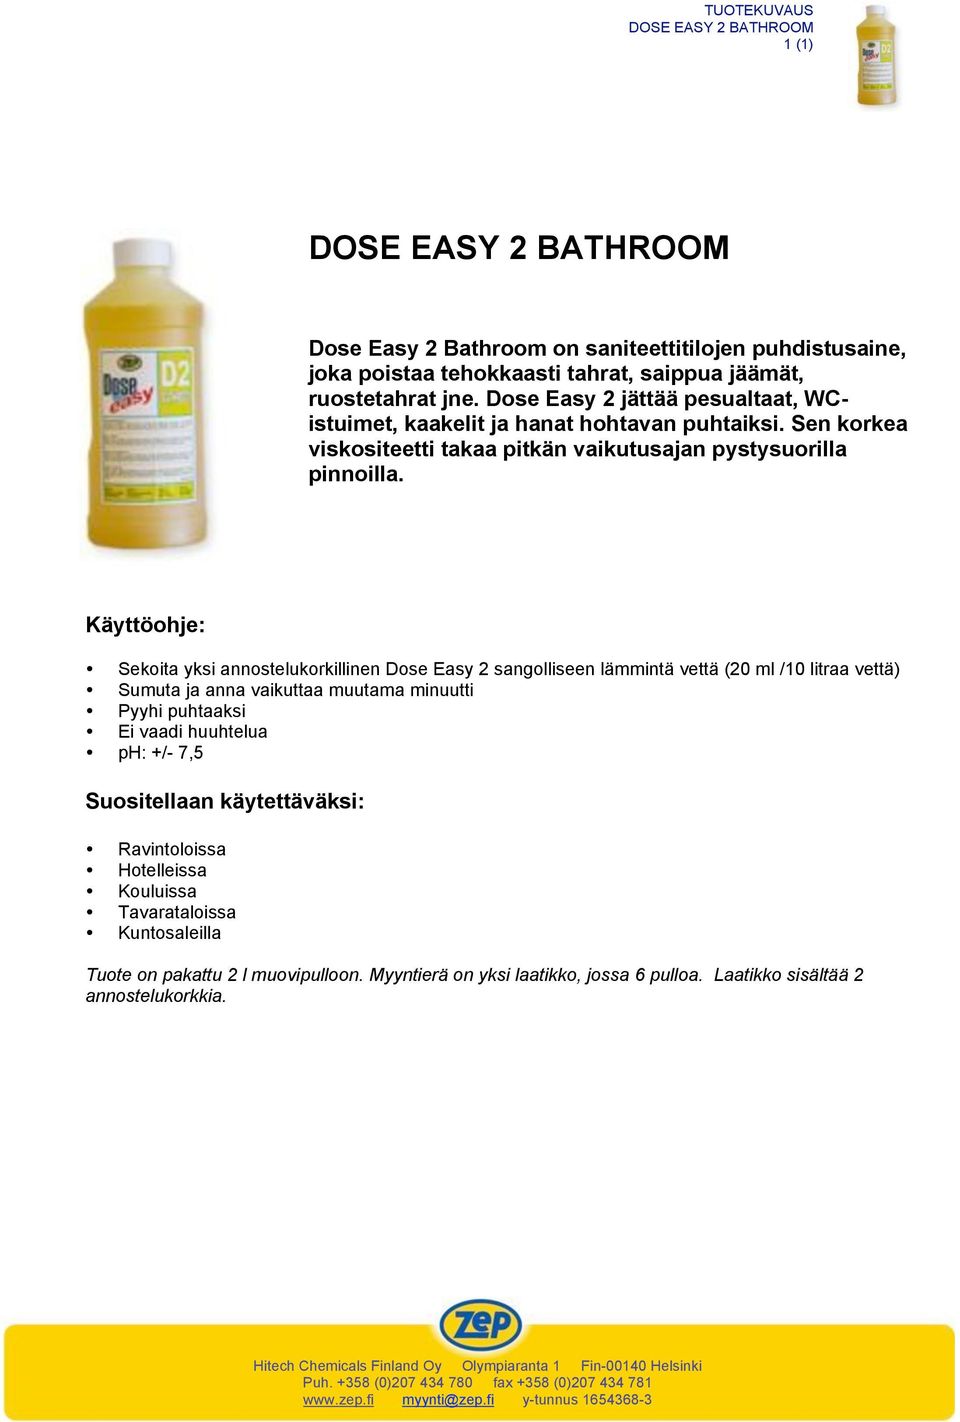 Sekoita yksi annostelukorkillinen Dose Easy 2 sangolliseen lämmintä vettä (20 ml /10 litraa vettä) Sumuta ja anna vaikuttaa muutama minuutti Pyyhi puhtaaksi Ei vaadi